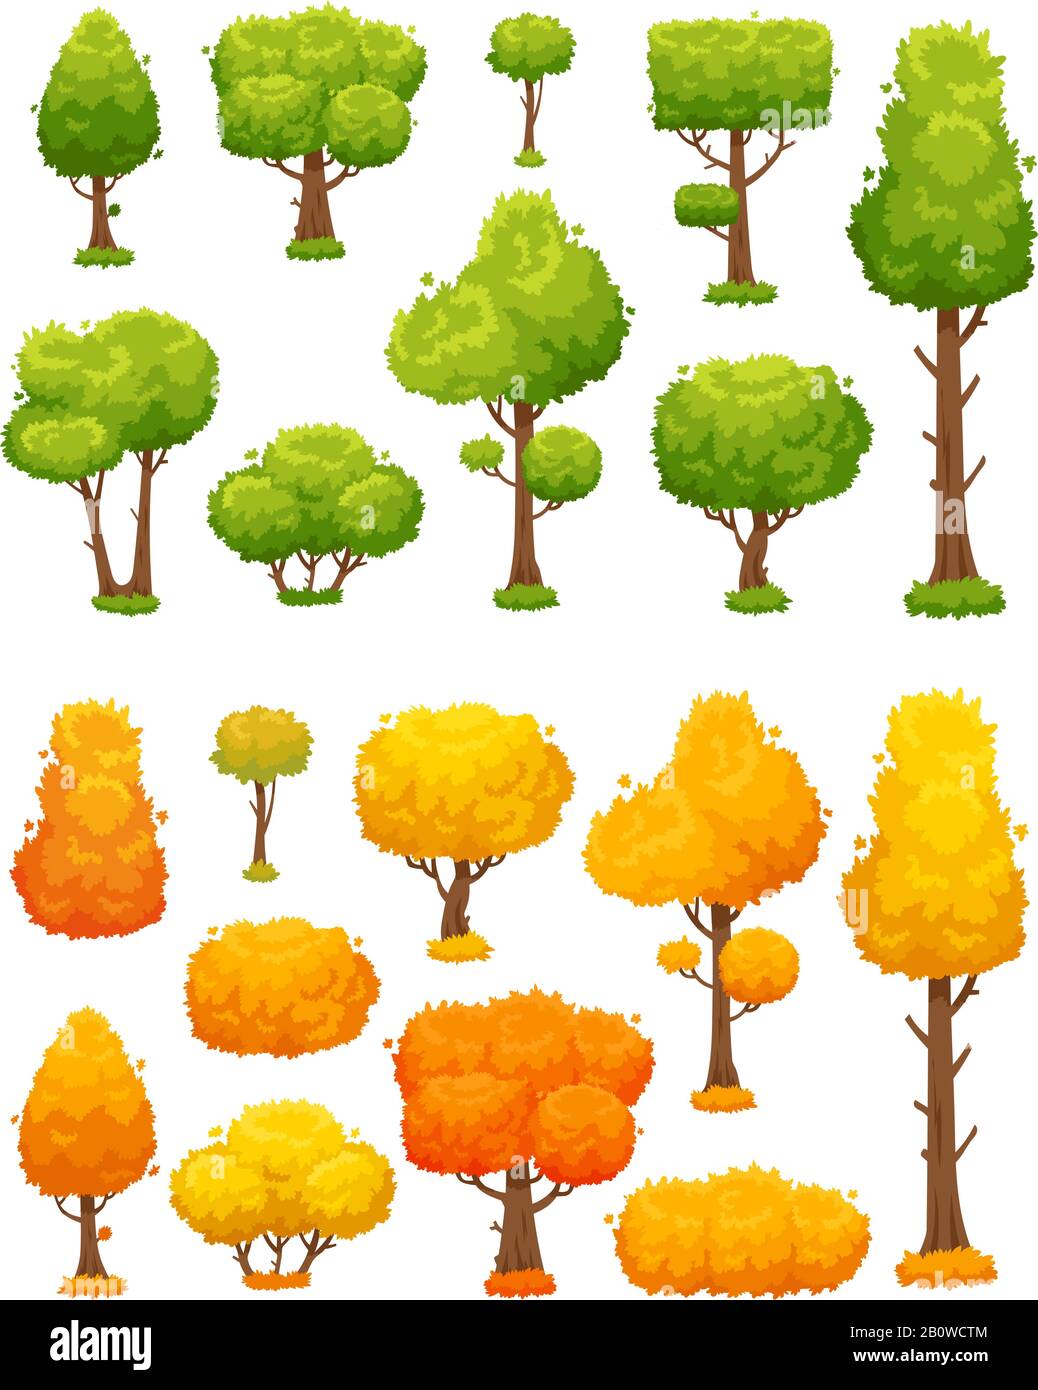 Arbre de dessin animé. Plantes et buissons en bois mignons. Les arbres d'automne verts et jaunes sont des éléments de paysage vectoriels Illustration de Vecteur